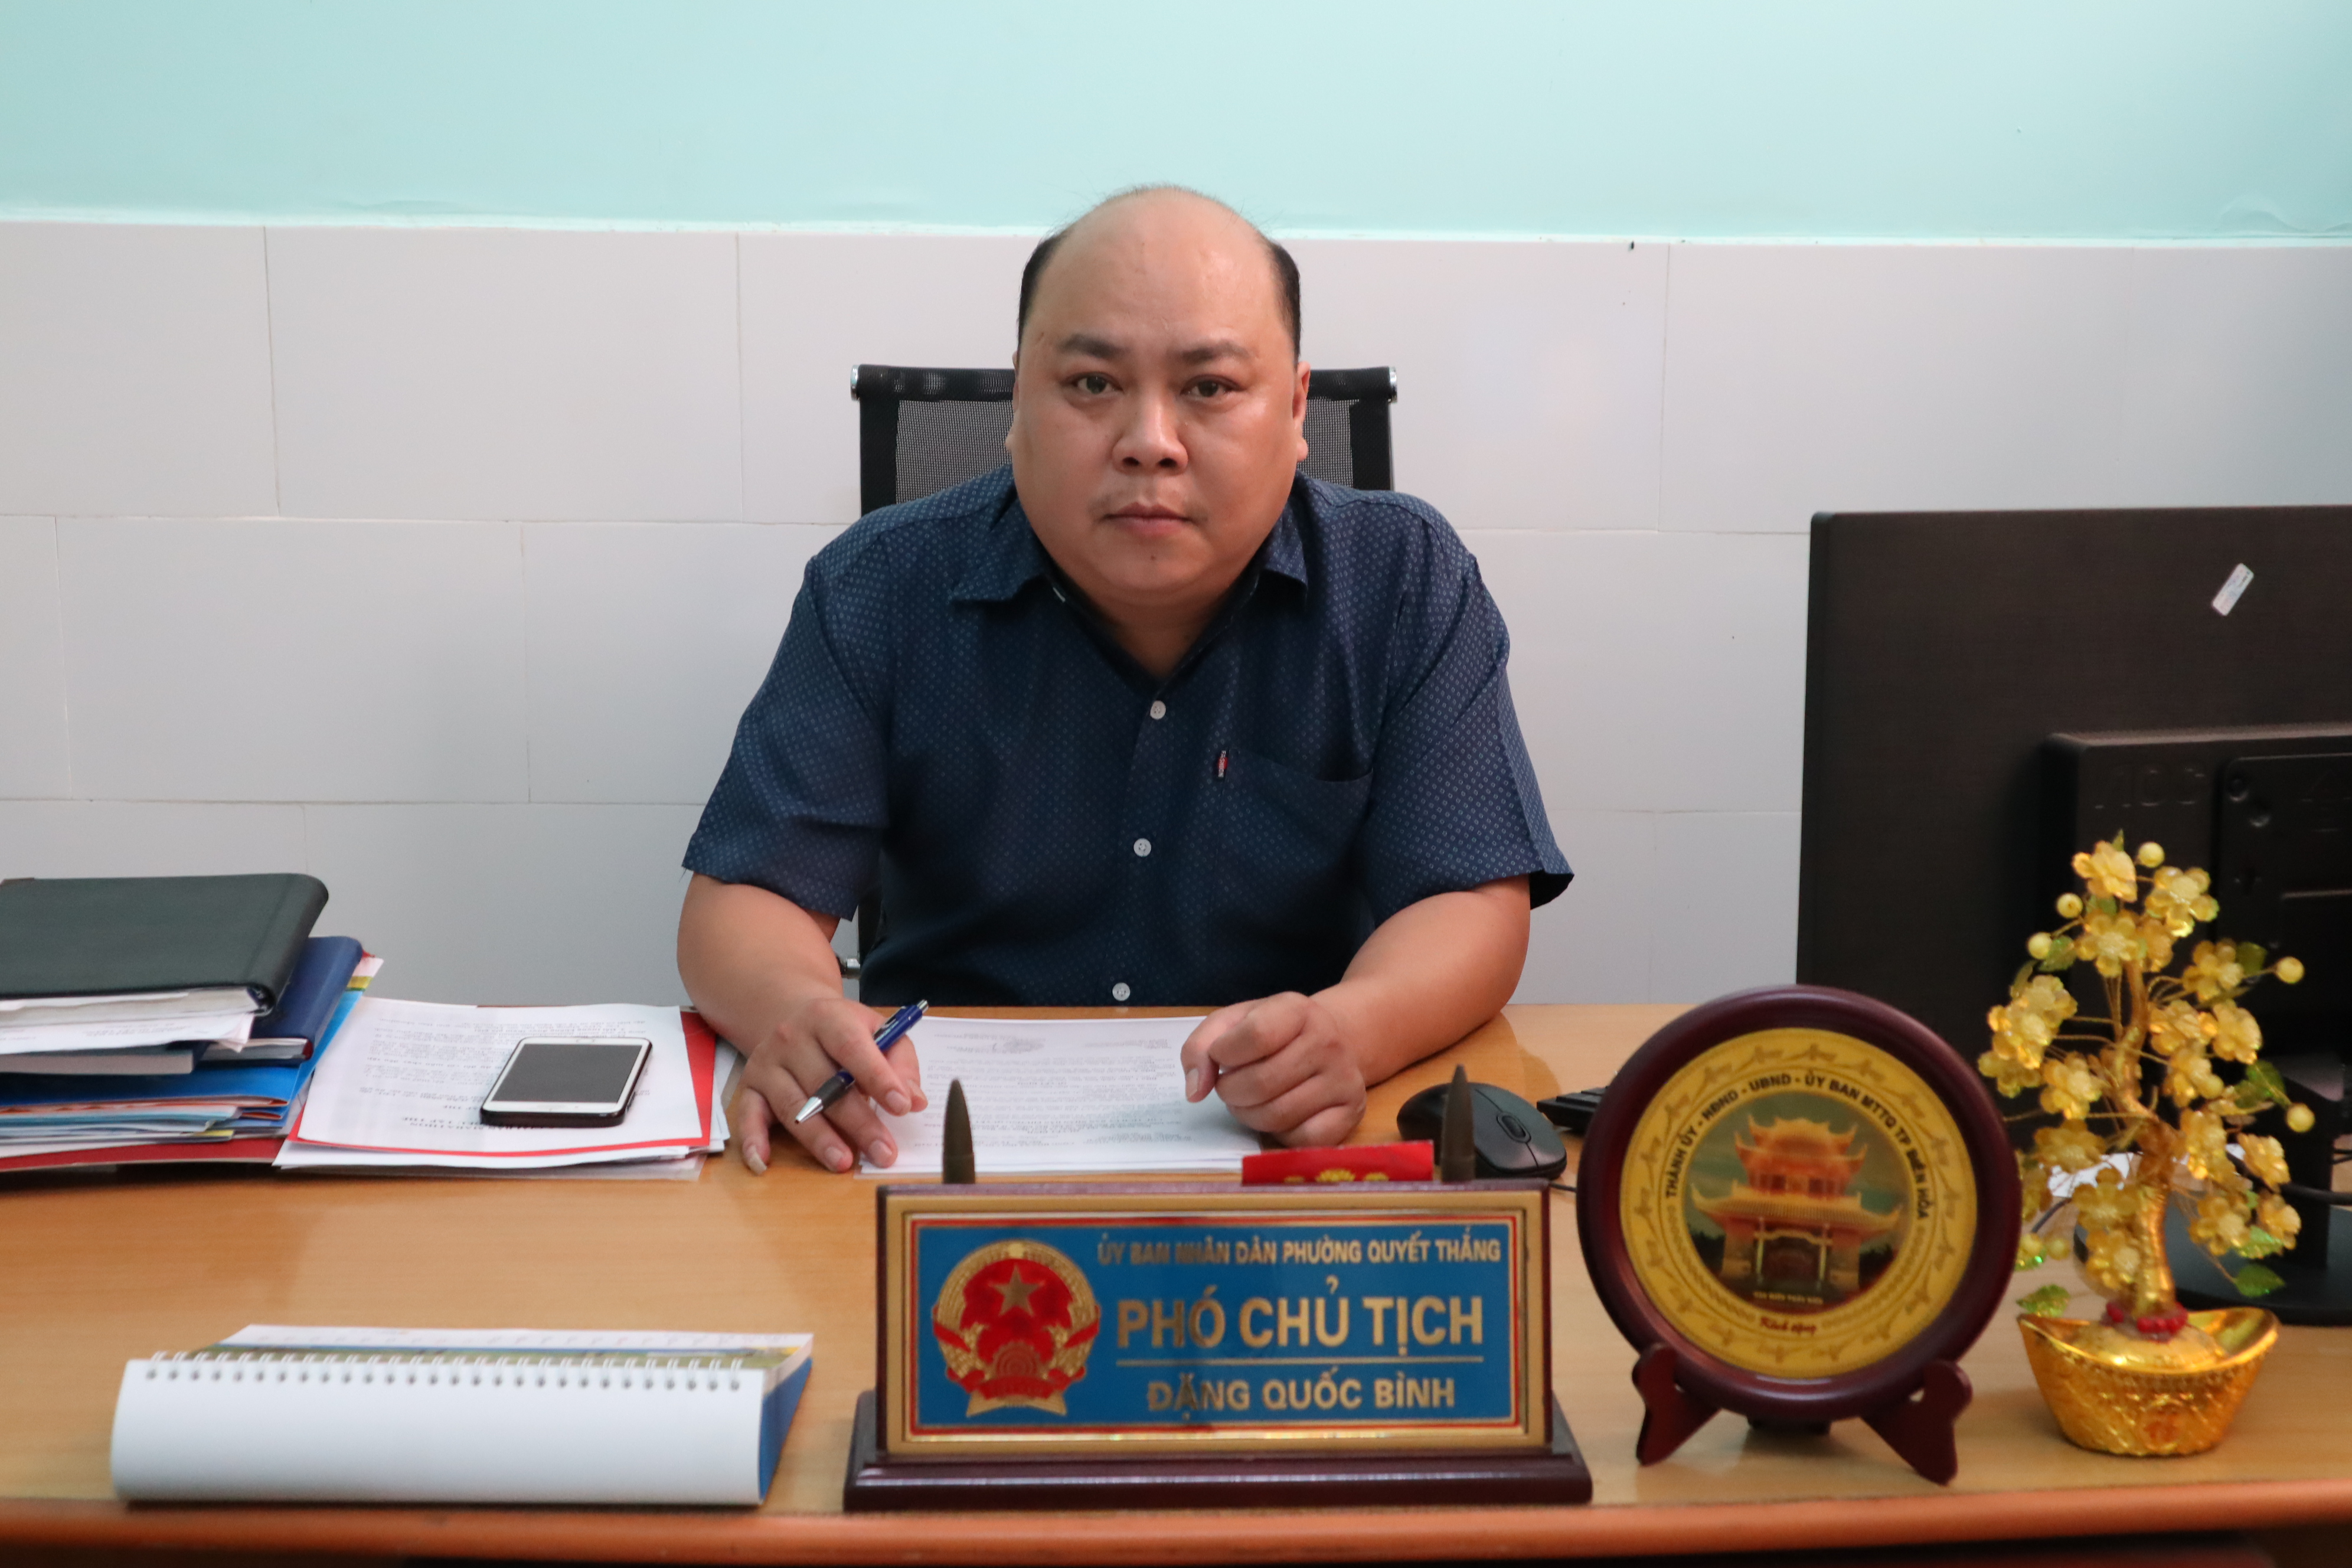 ông Đặng Quốc Bình – Phó Chủ tịch UBND phường Quyết Thắng.